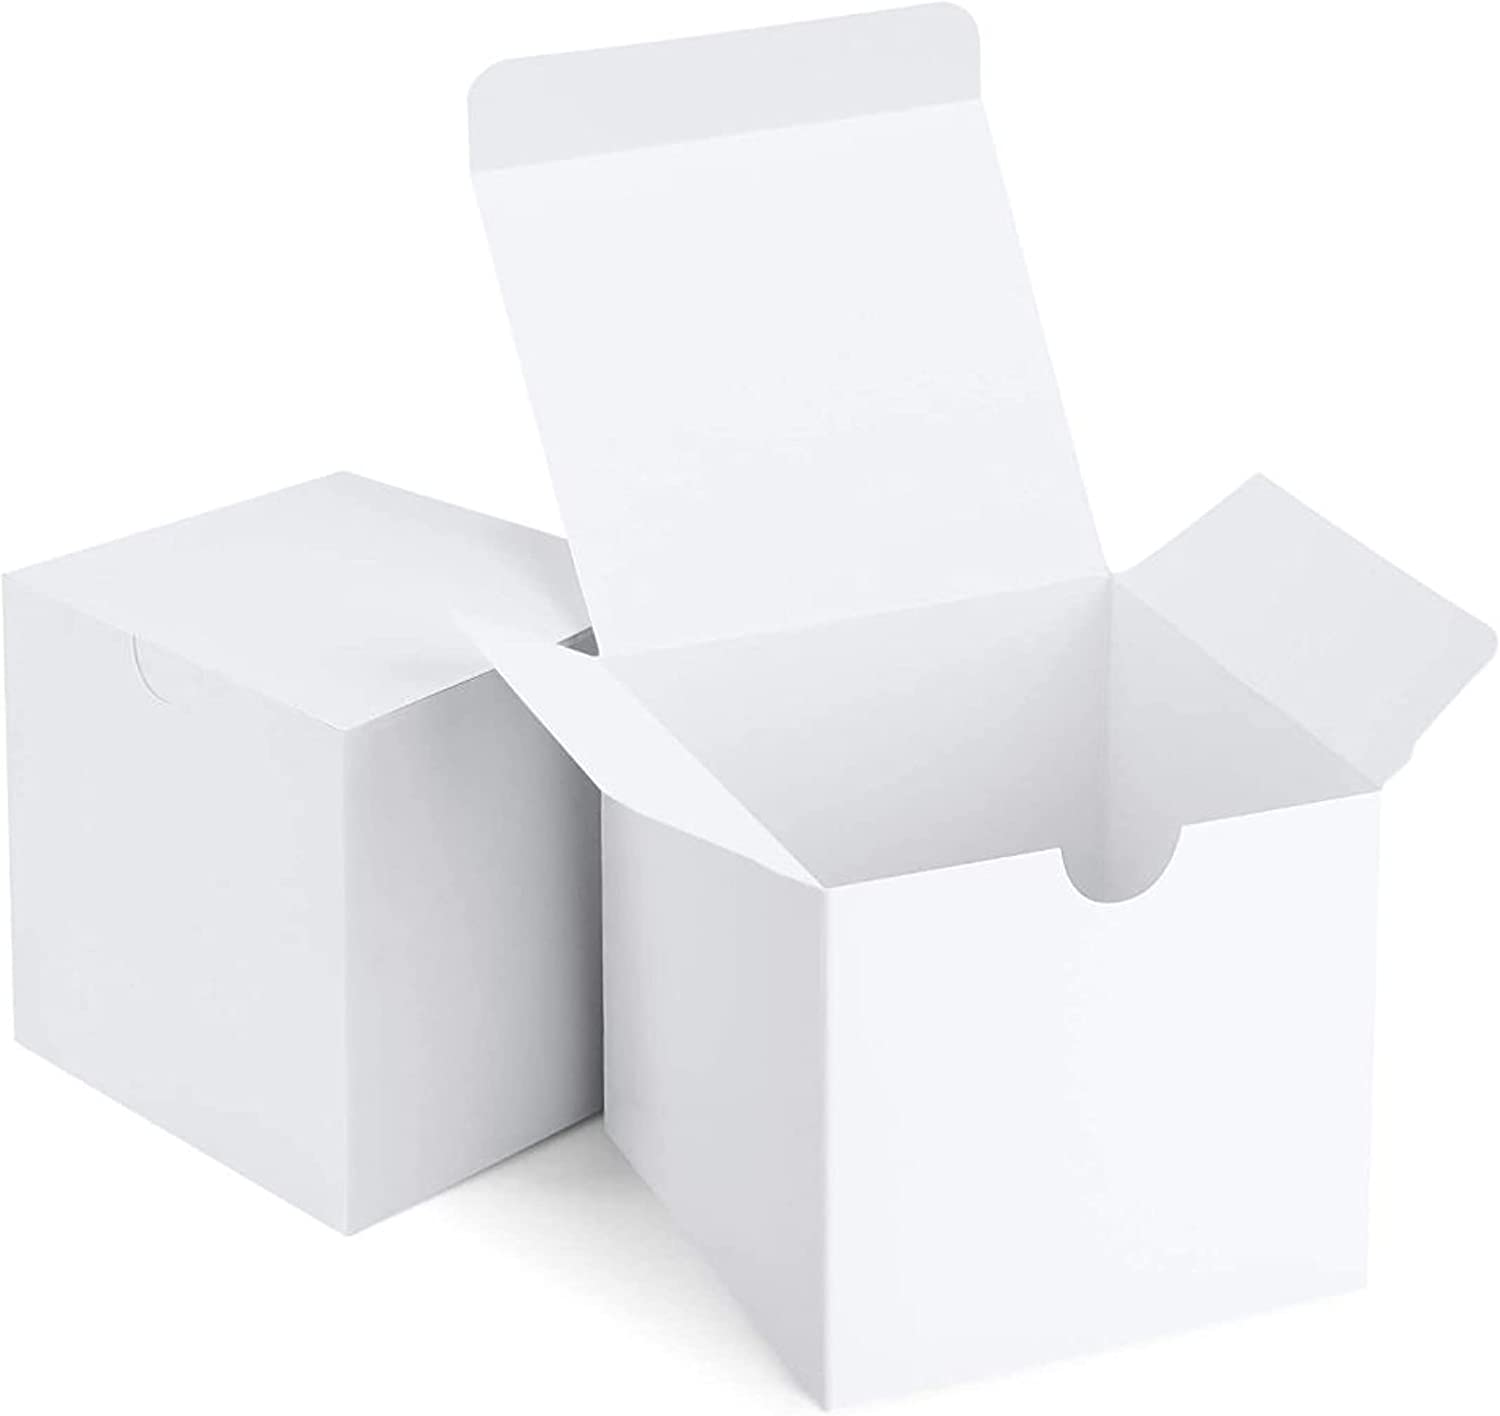 Box of 36 White Mug with Branding